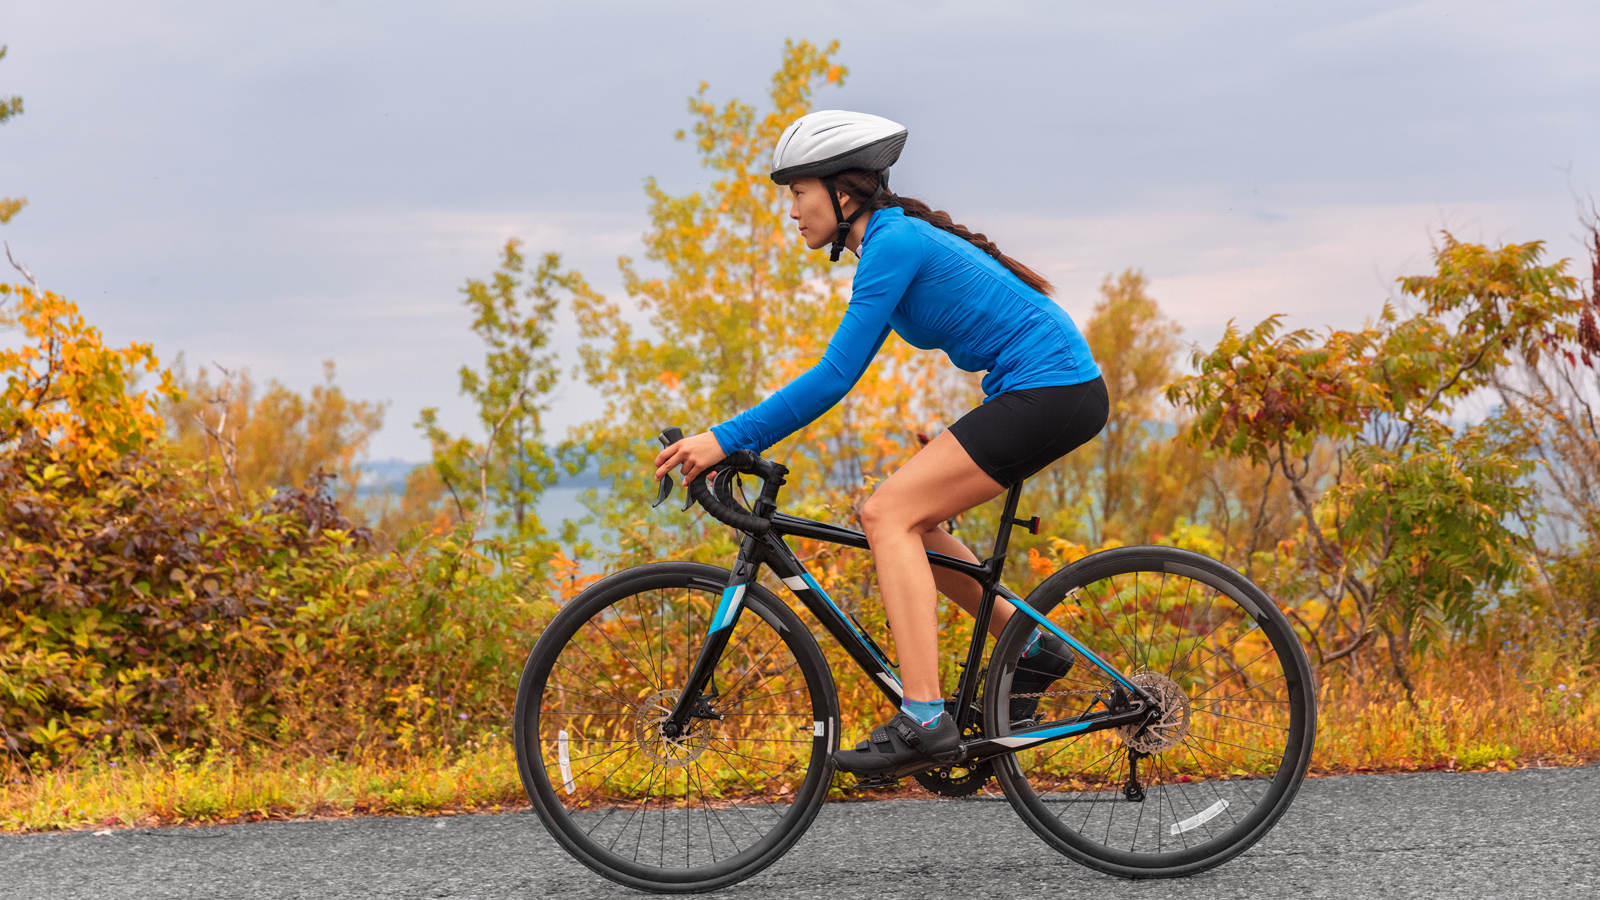 Đạp xe là cách tập luyện phù hợp để cải thiện bệnh thoái hóa khớp gối